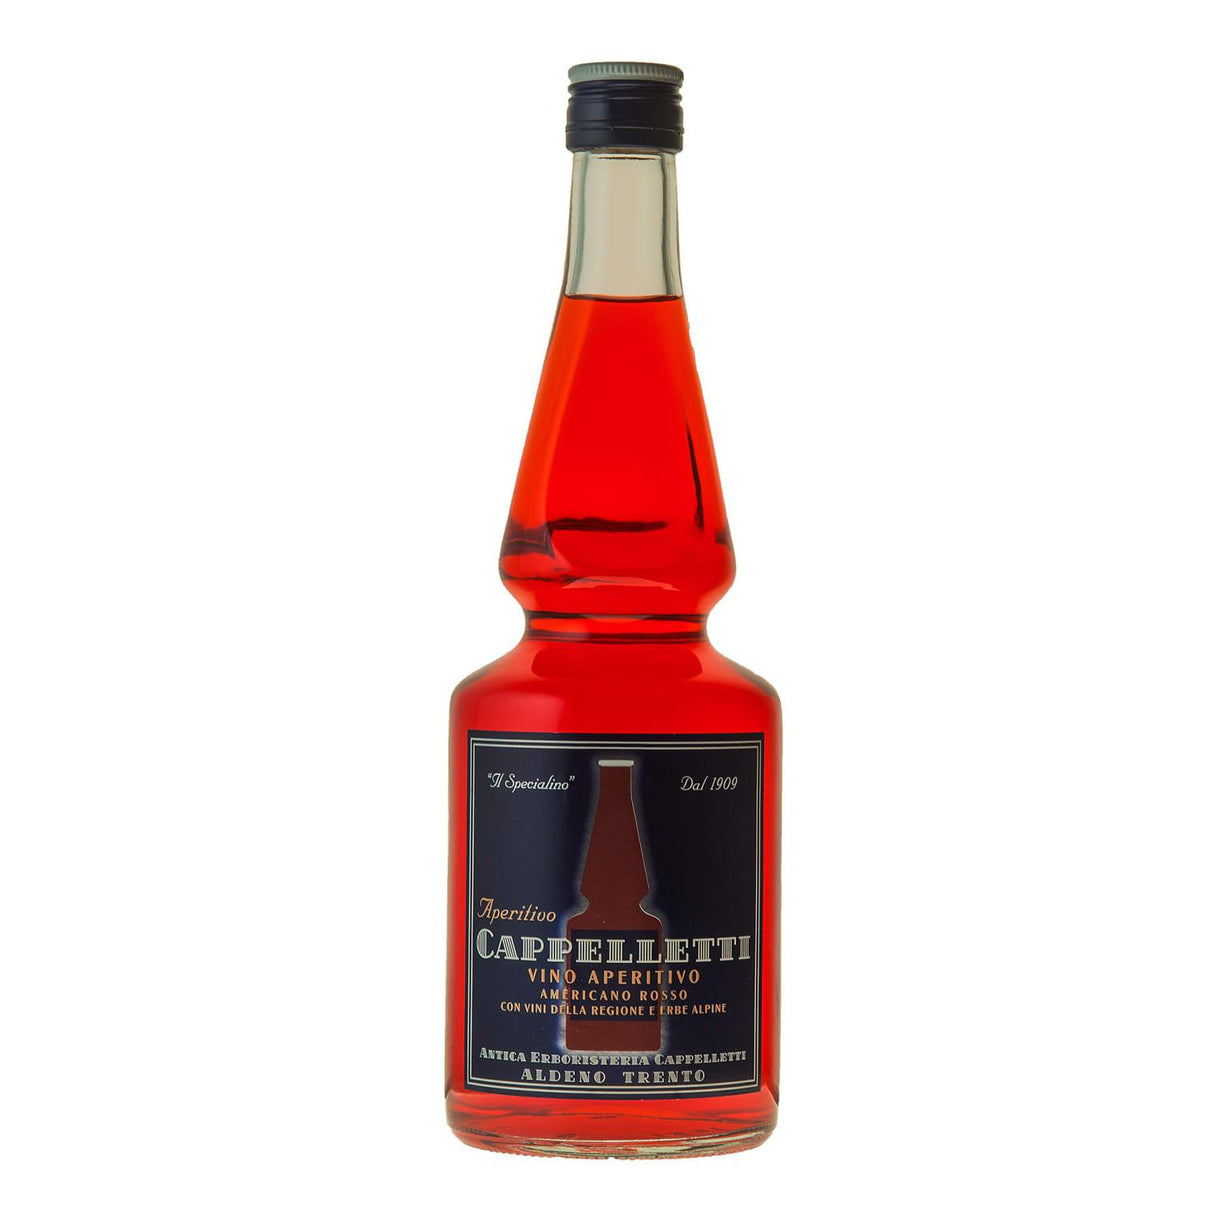 Cappelletti Aperitivo Americano Rosso 750ml NV-Spirits-World Wine